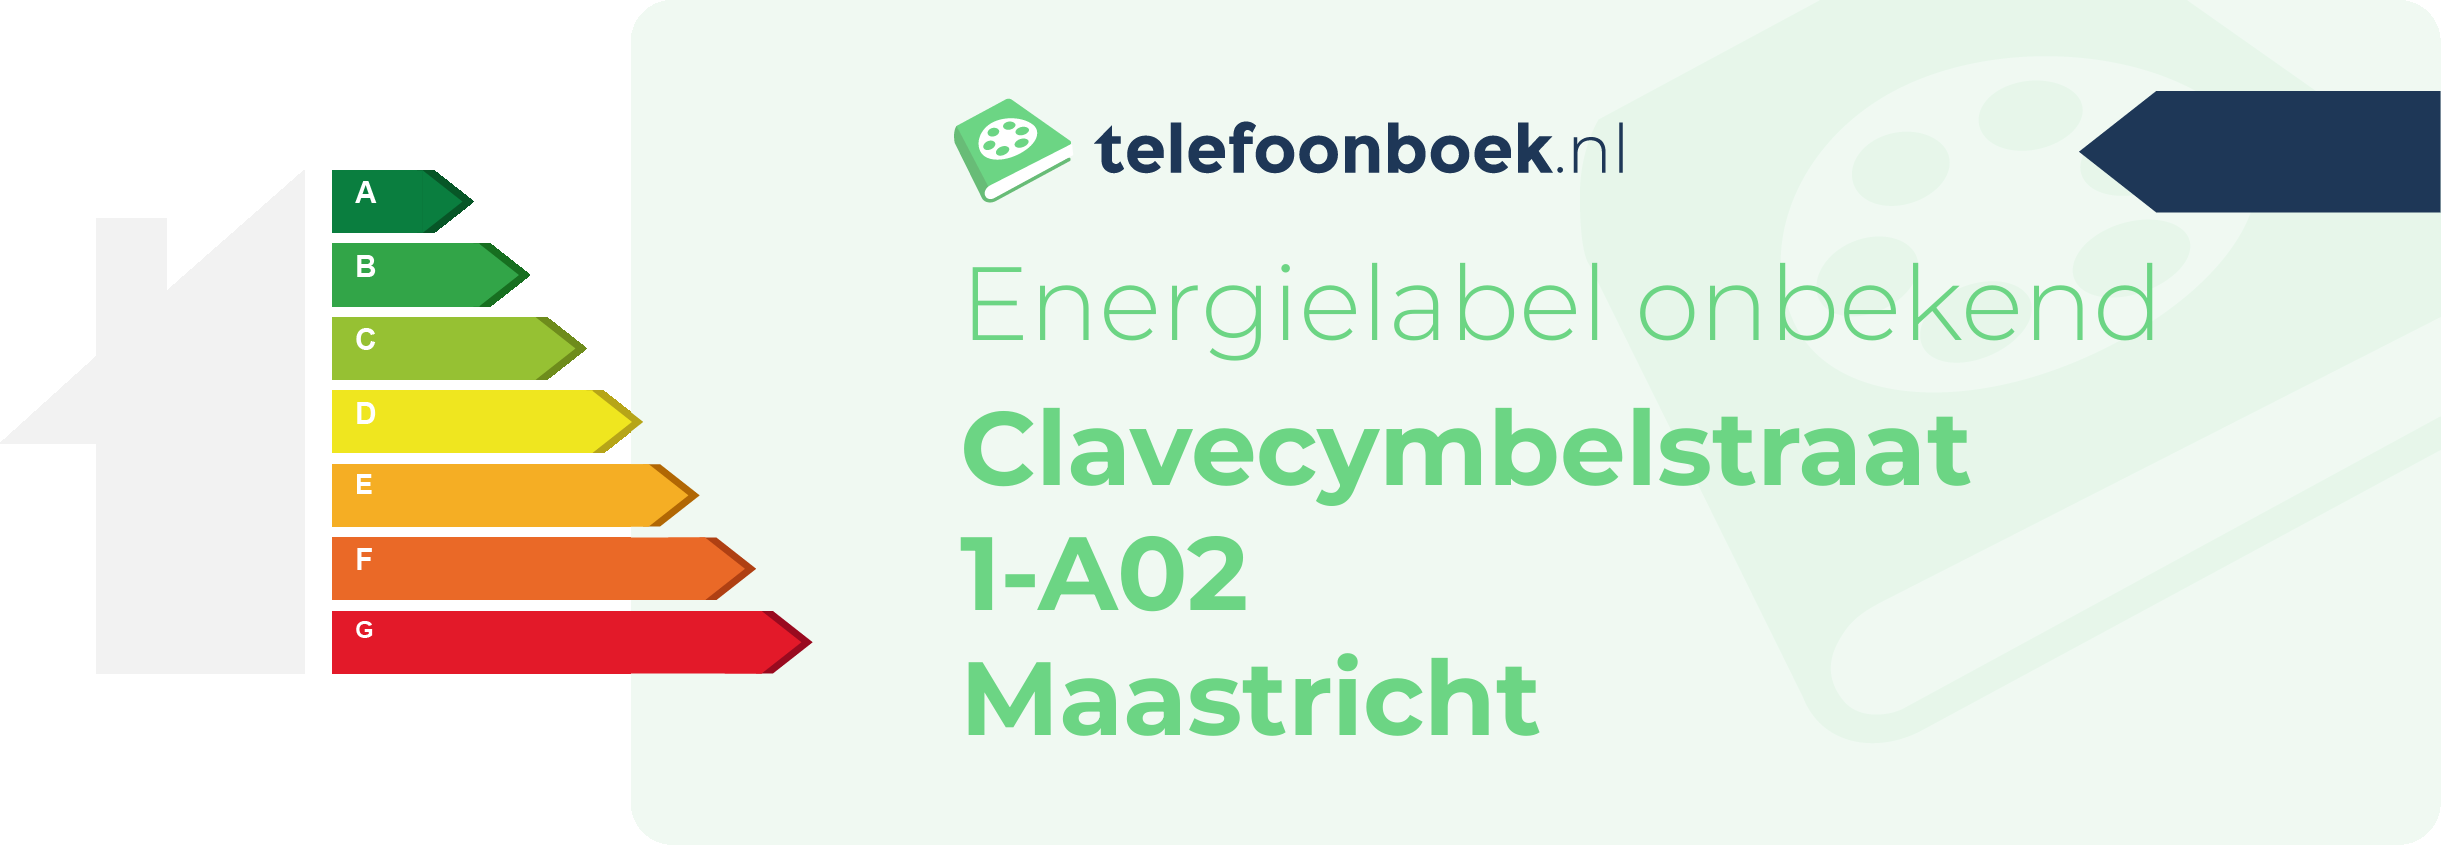 Energielabel Clavecymbelstraat 1-A02 Maastricht